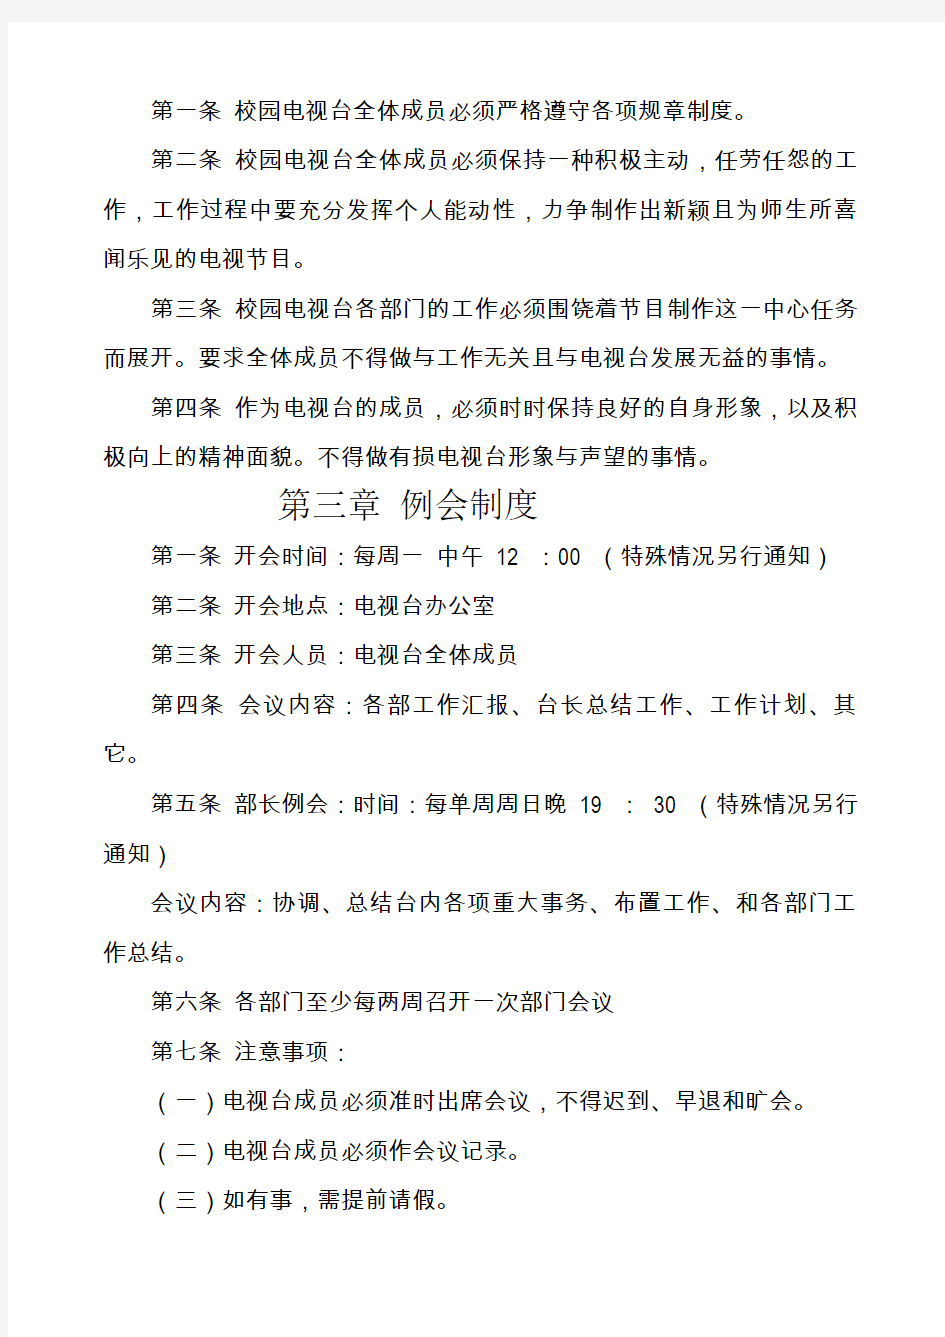 黑龙江工程学院学生网络电视台管理制度